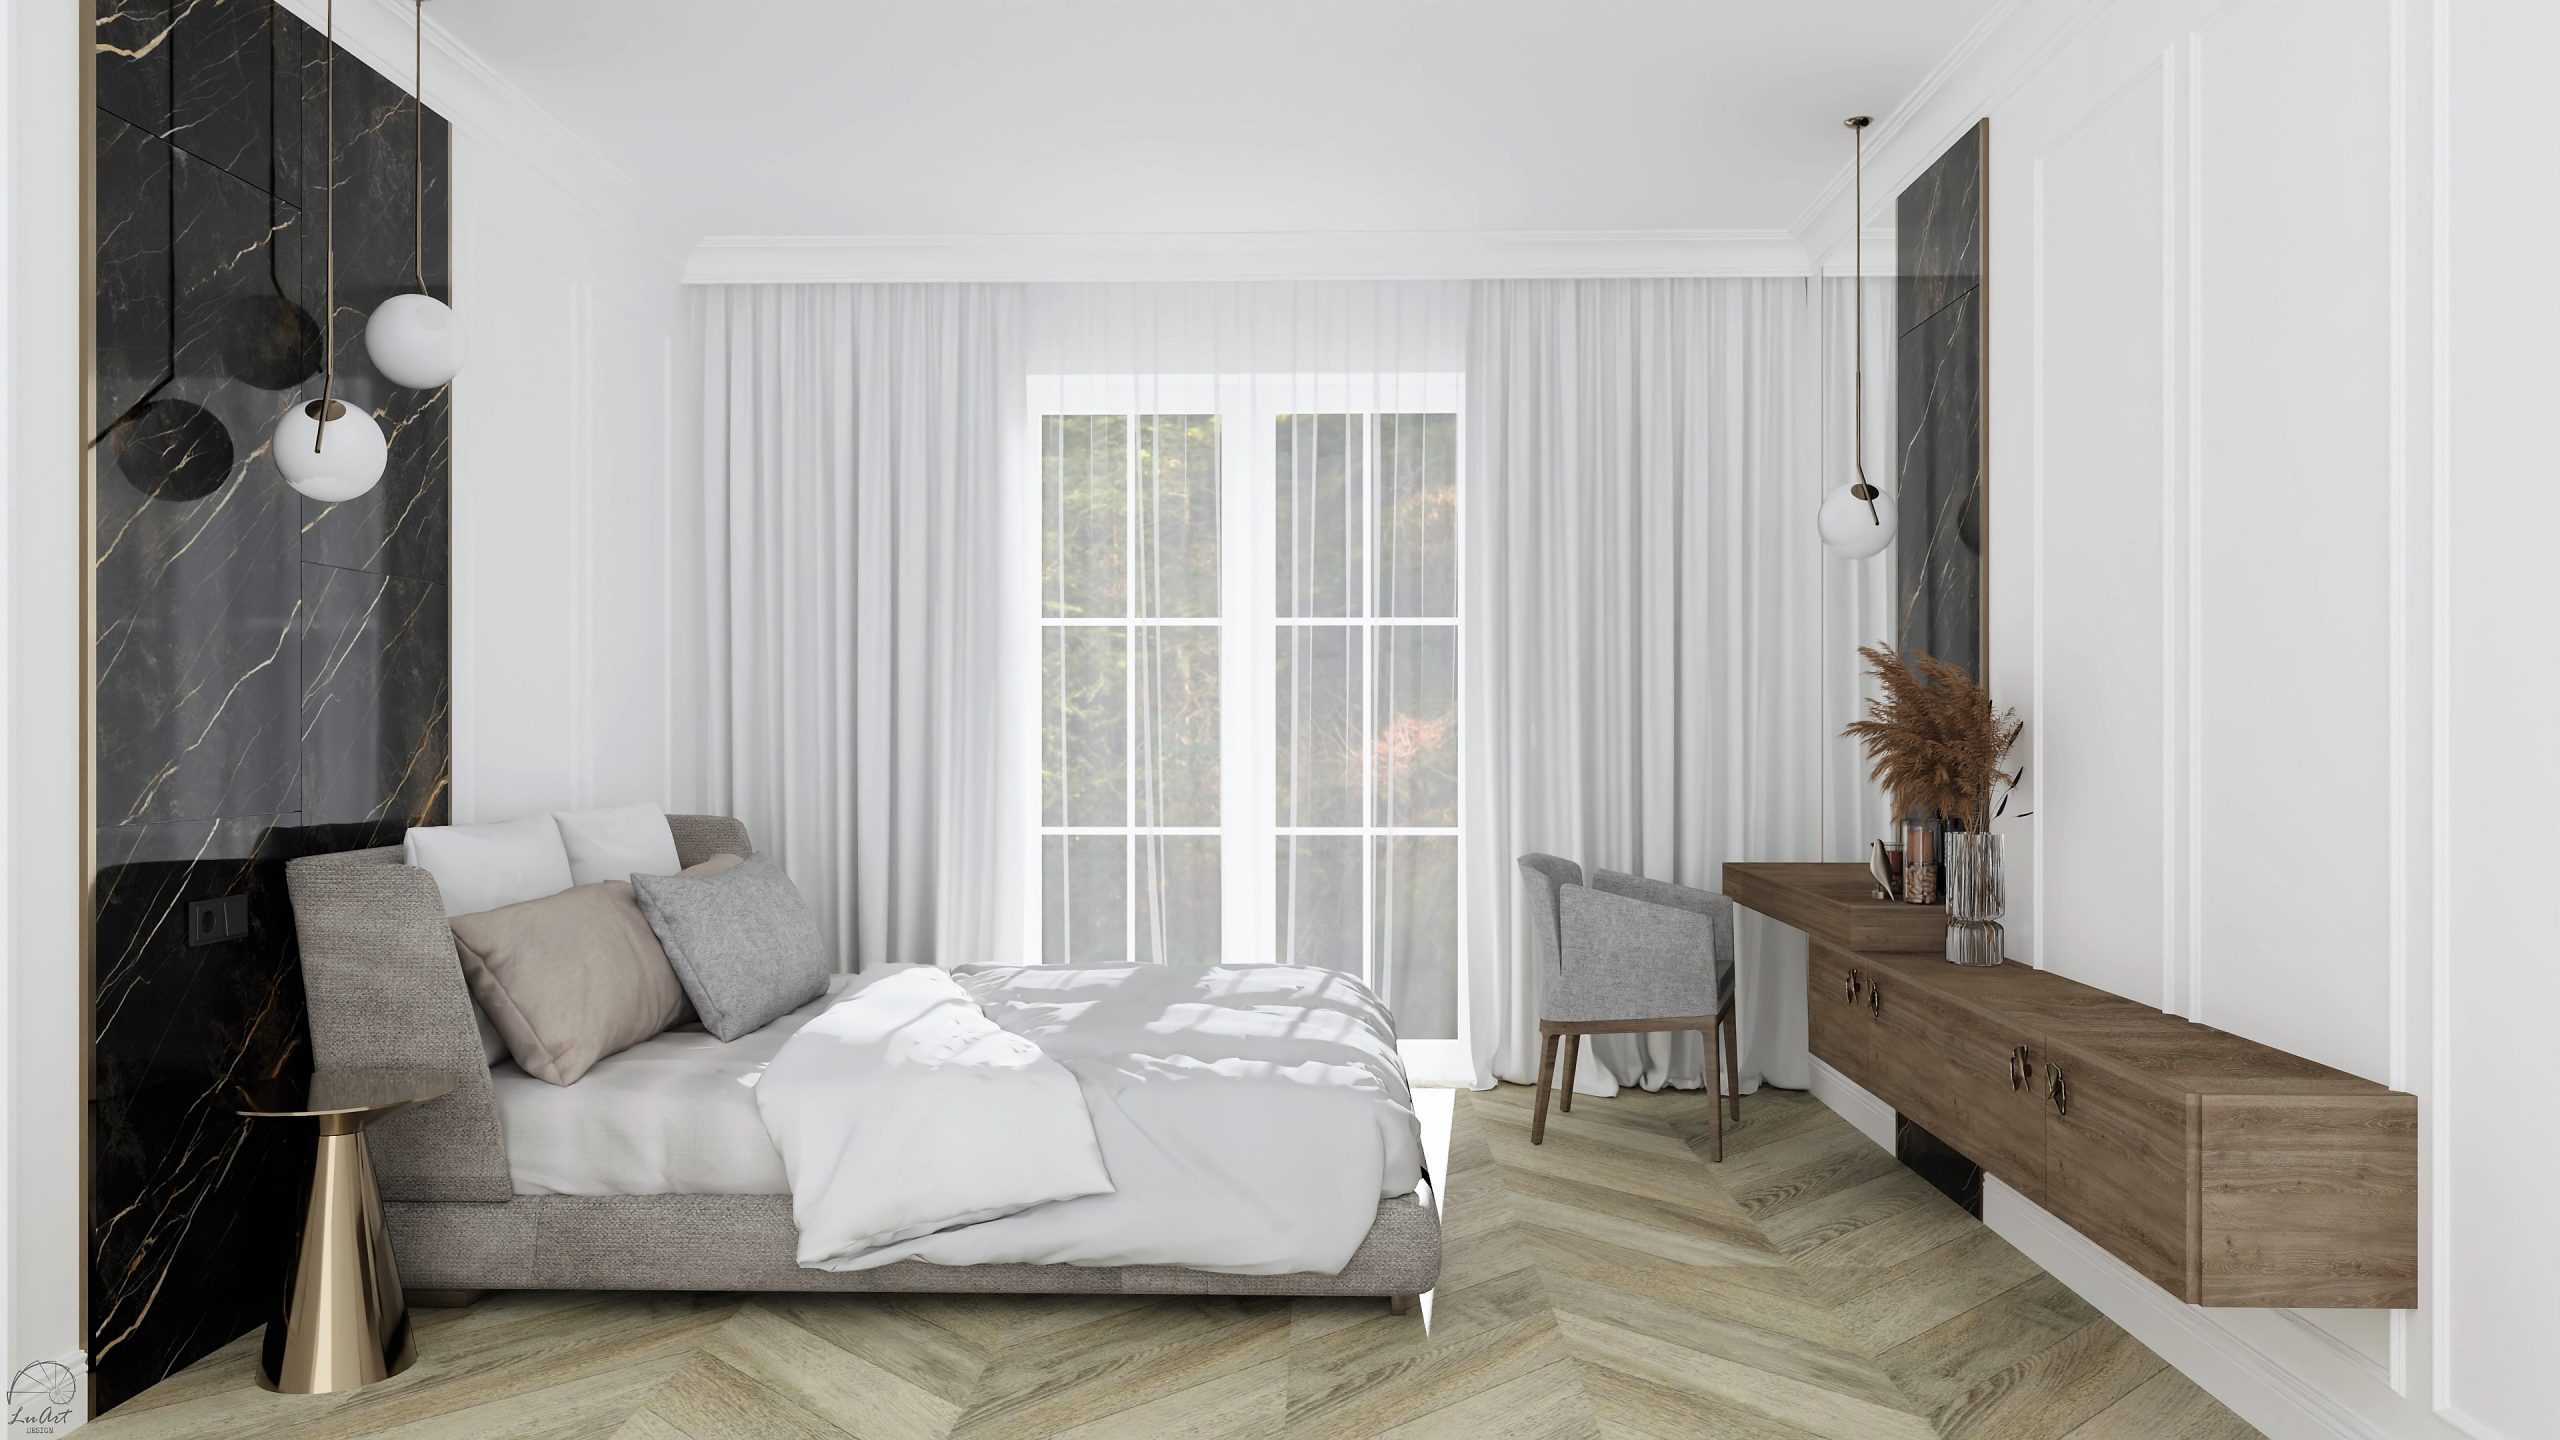 Zdjęcie 3 - Aranżacja sypialni w stylu modern classic z ukrytą garderobą - realizacja projektu